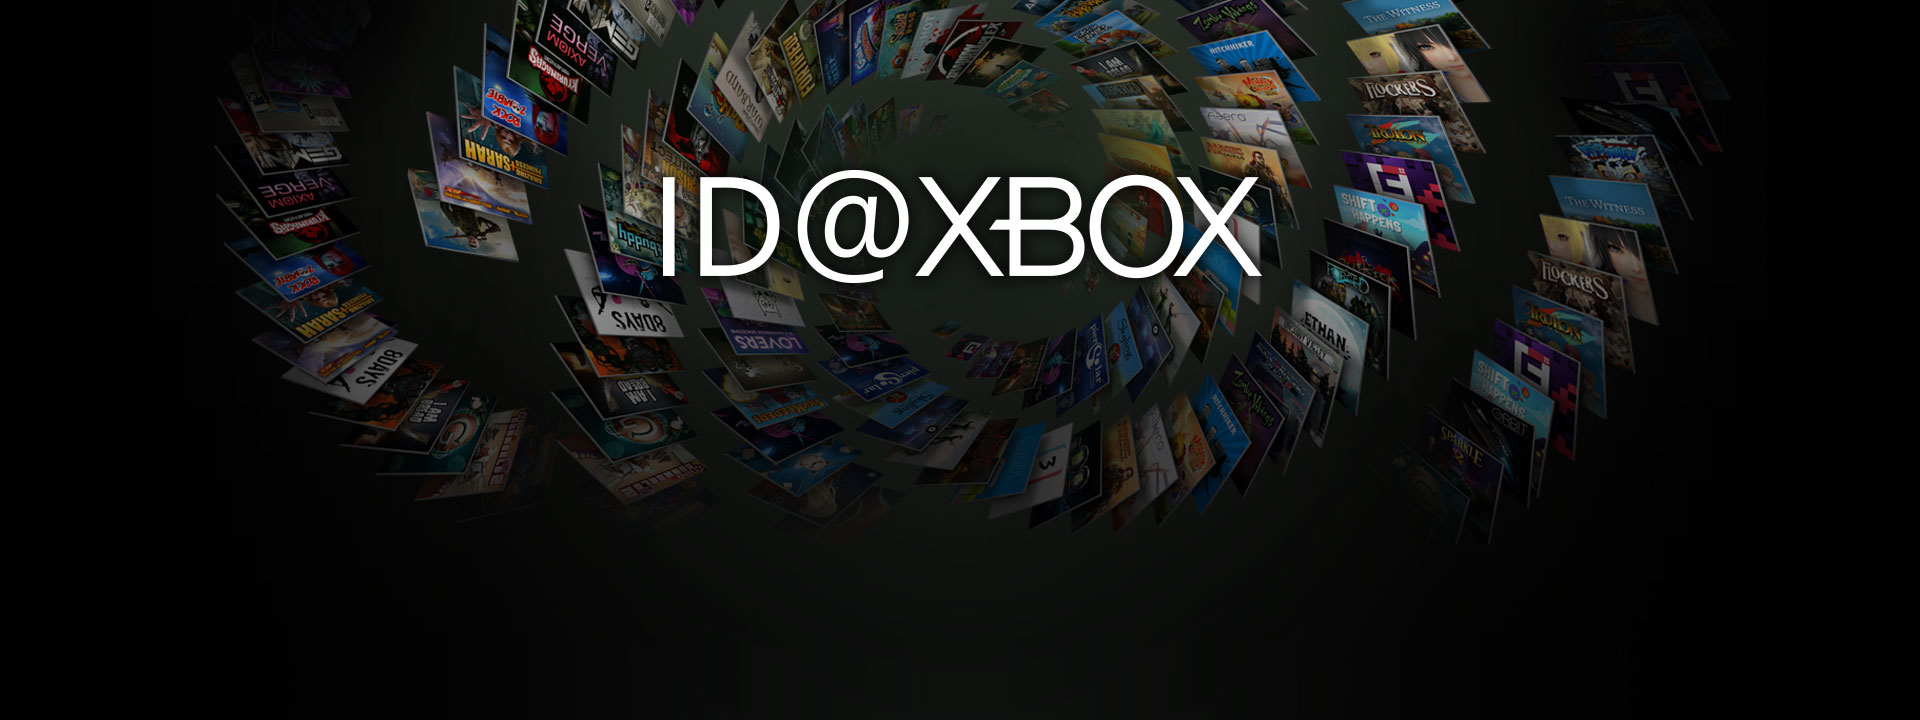 ID bij Xbox-logo voor een verzameling boxfoto's van ID-games